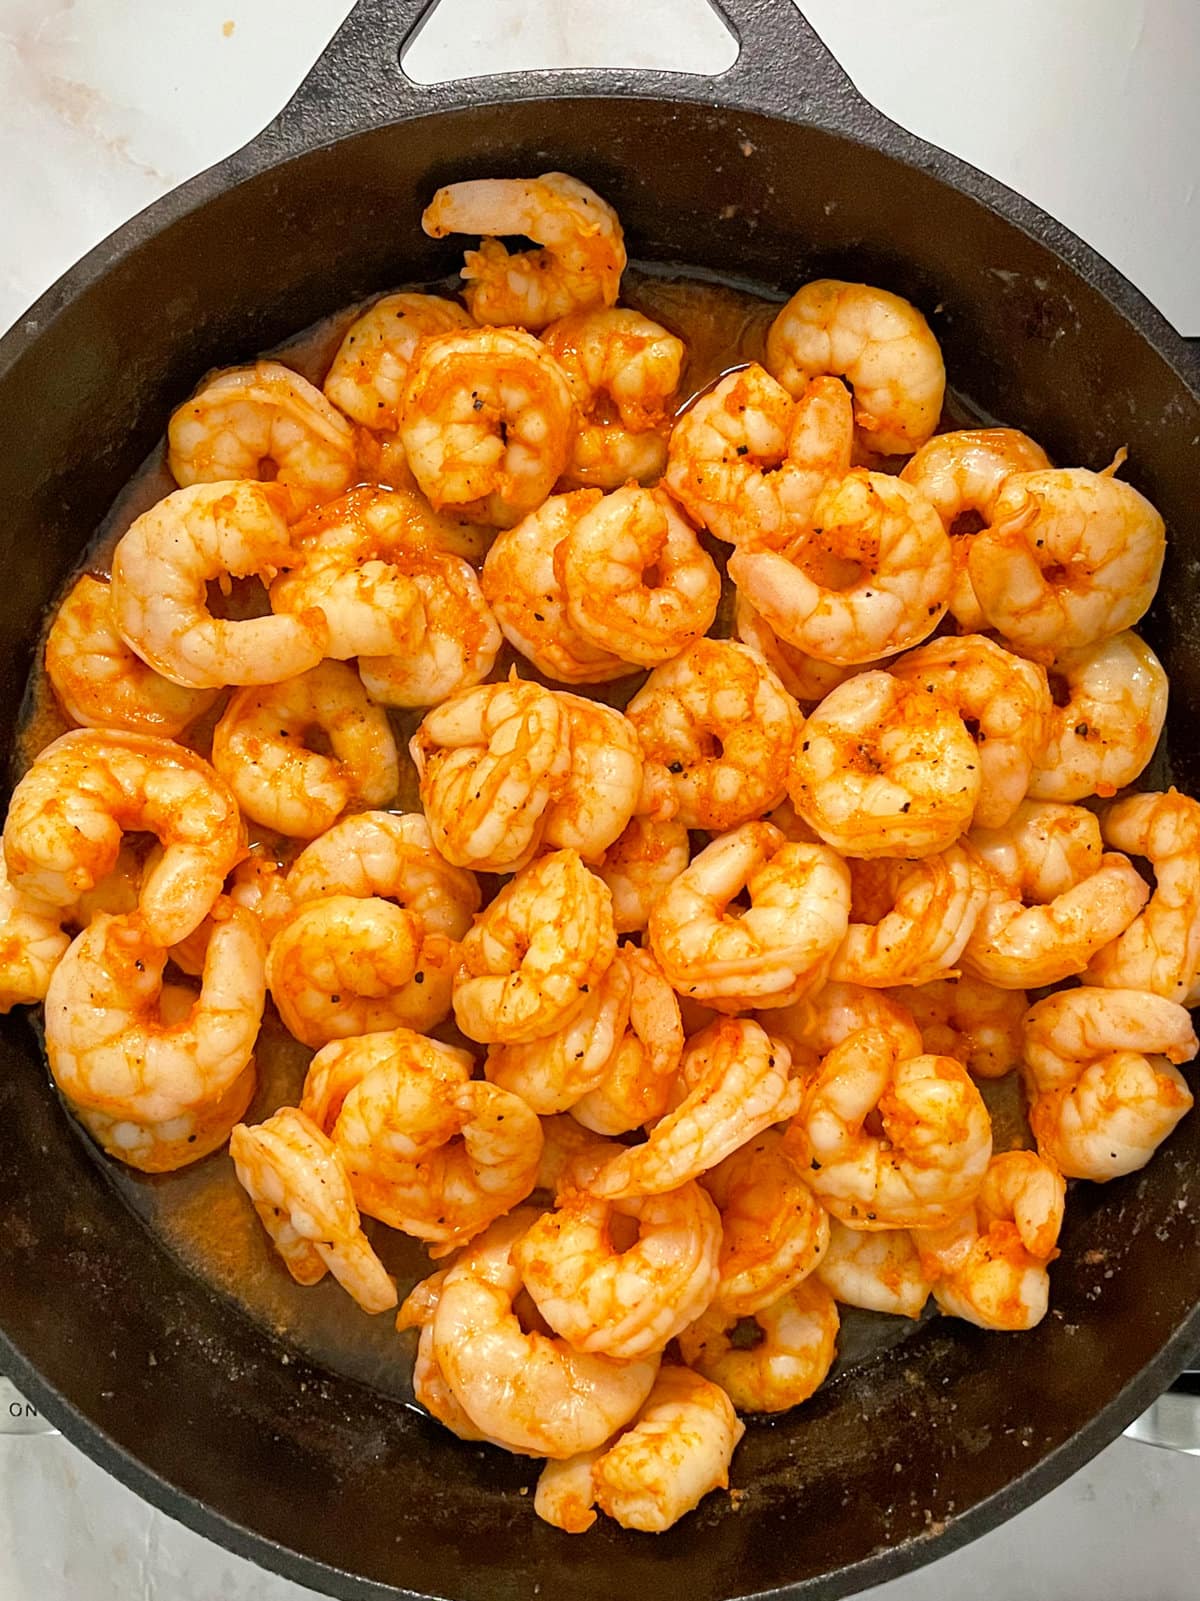 shrimp cooking in skillet